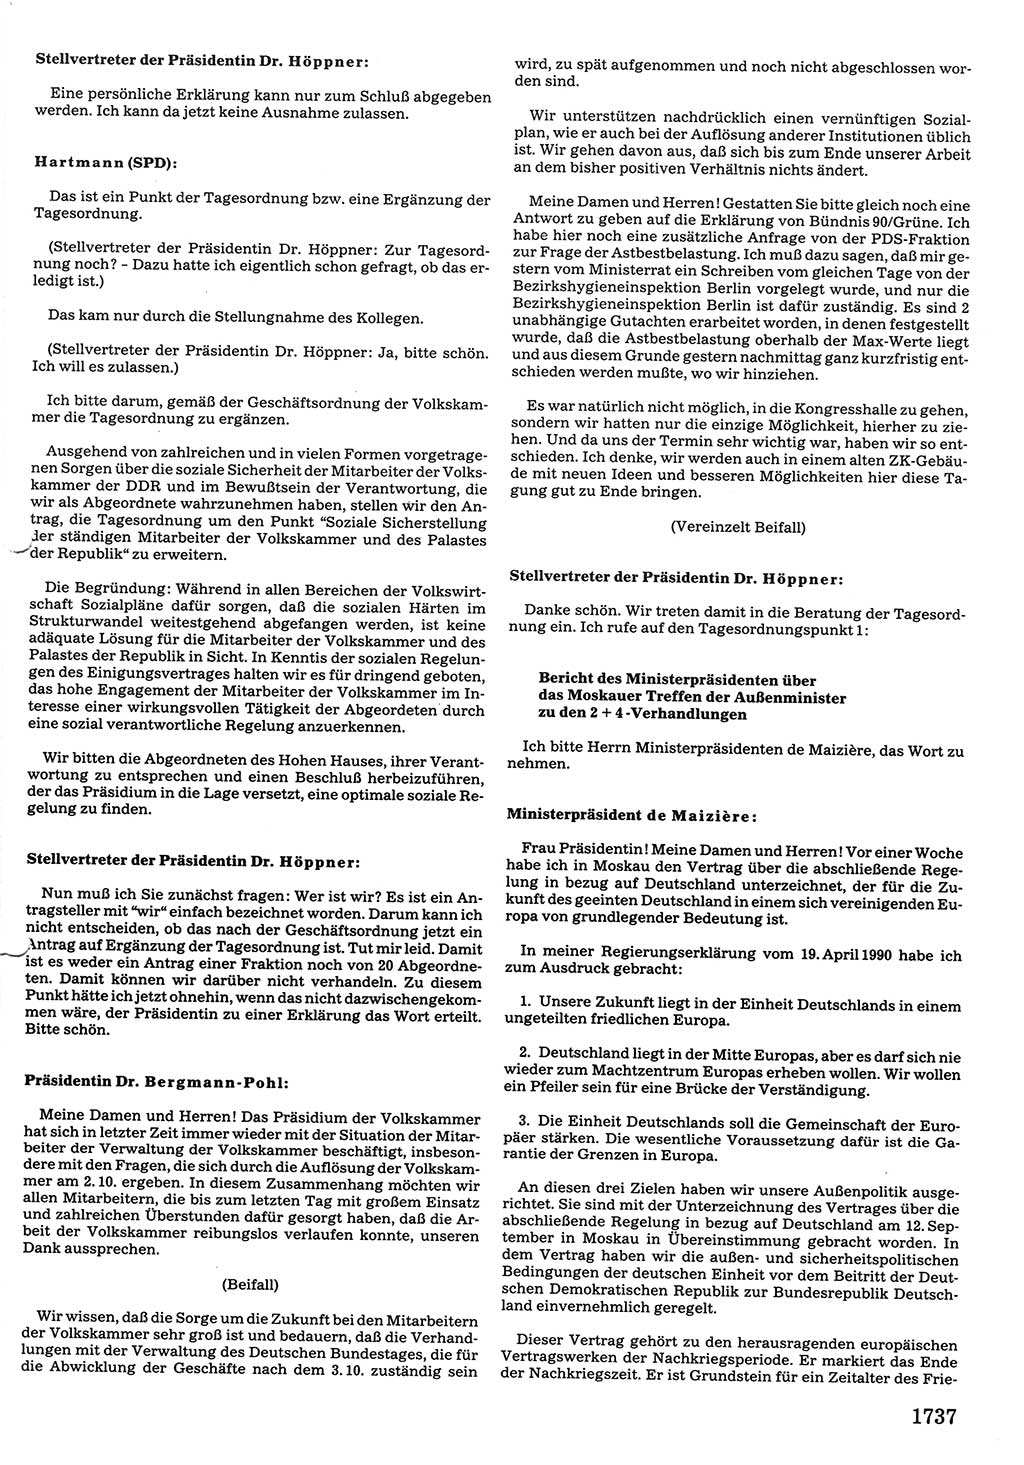 Tagungen der Volkskammer (VK) der Deutschen Demokratischen Republik (DDR), 10. Wahlperiode 1990, Seite 1737 (VK. DDR 10. WP. 1990, Prot. Tg. 1-38, 5.4.-2.10.1990, S. 1737)